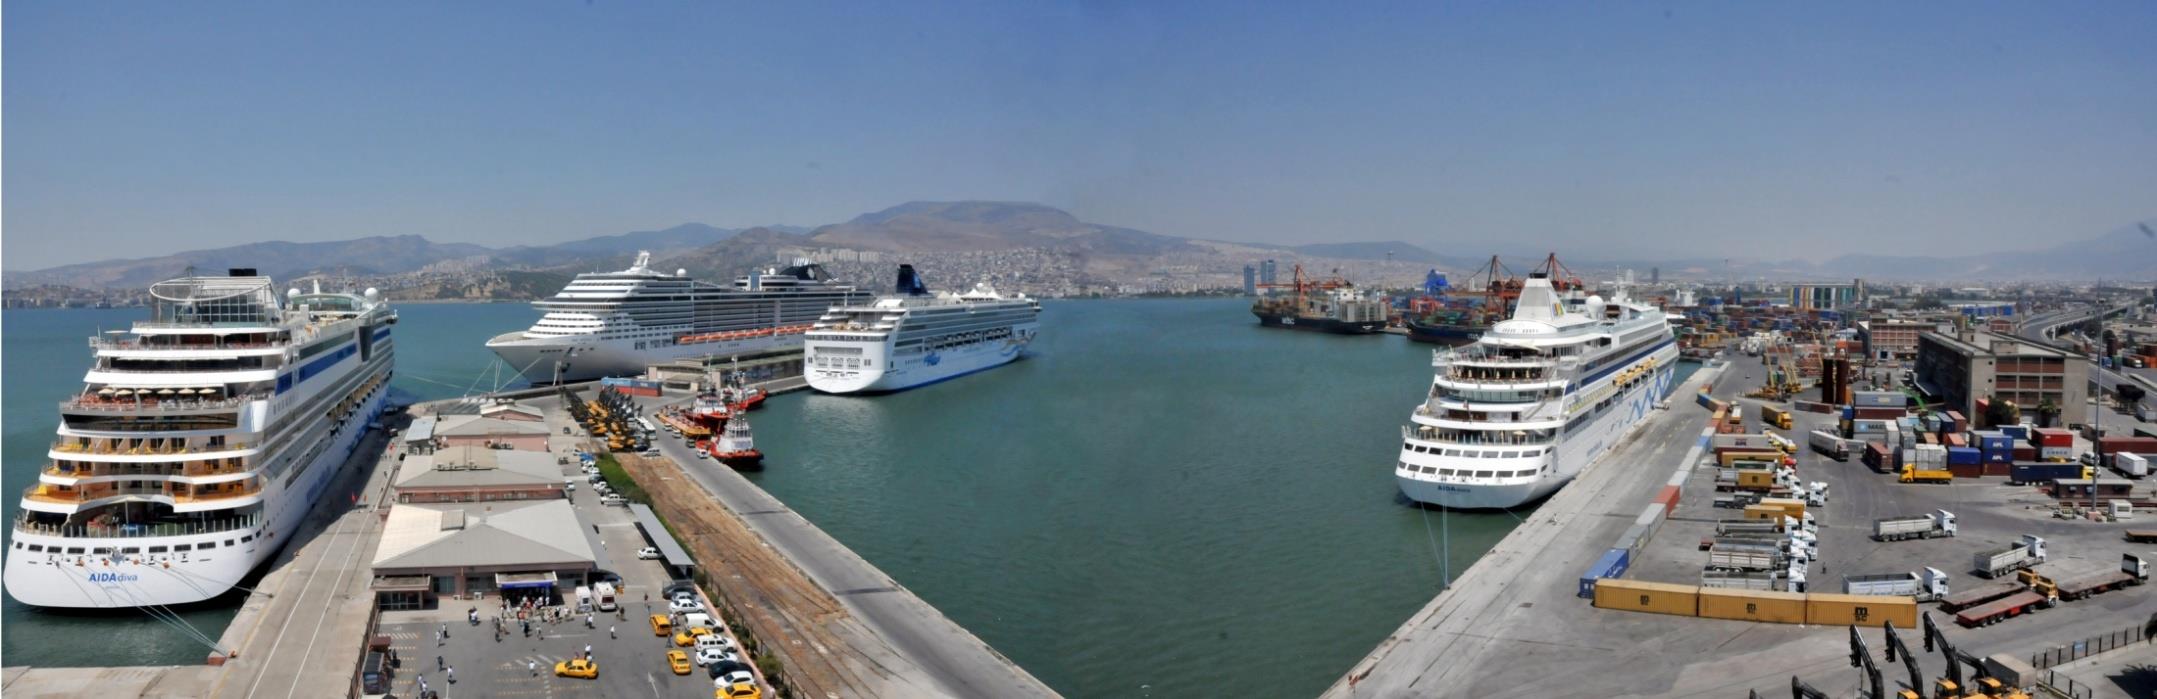 Kruvaziyer gemilerin yönlerini İzmir e